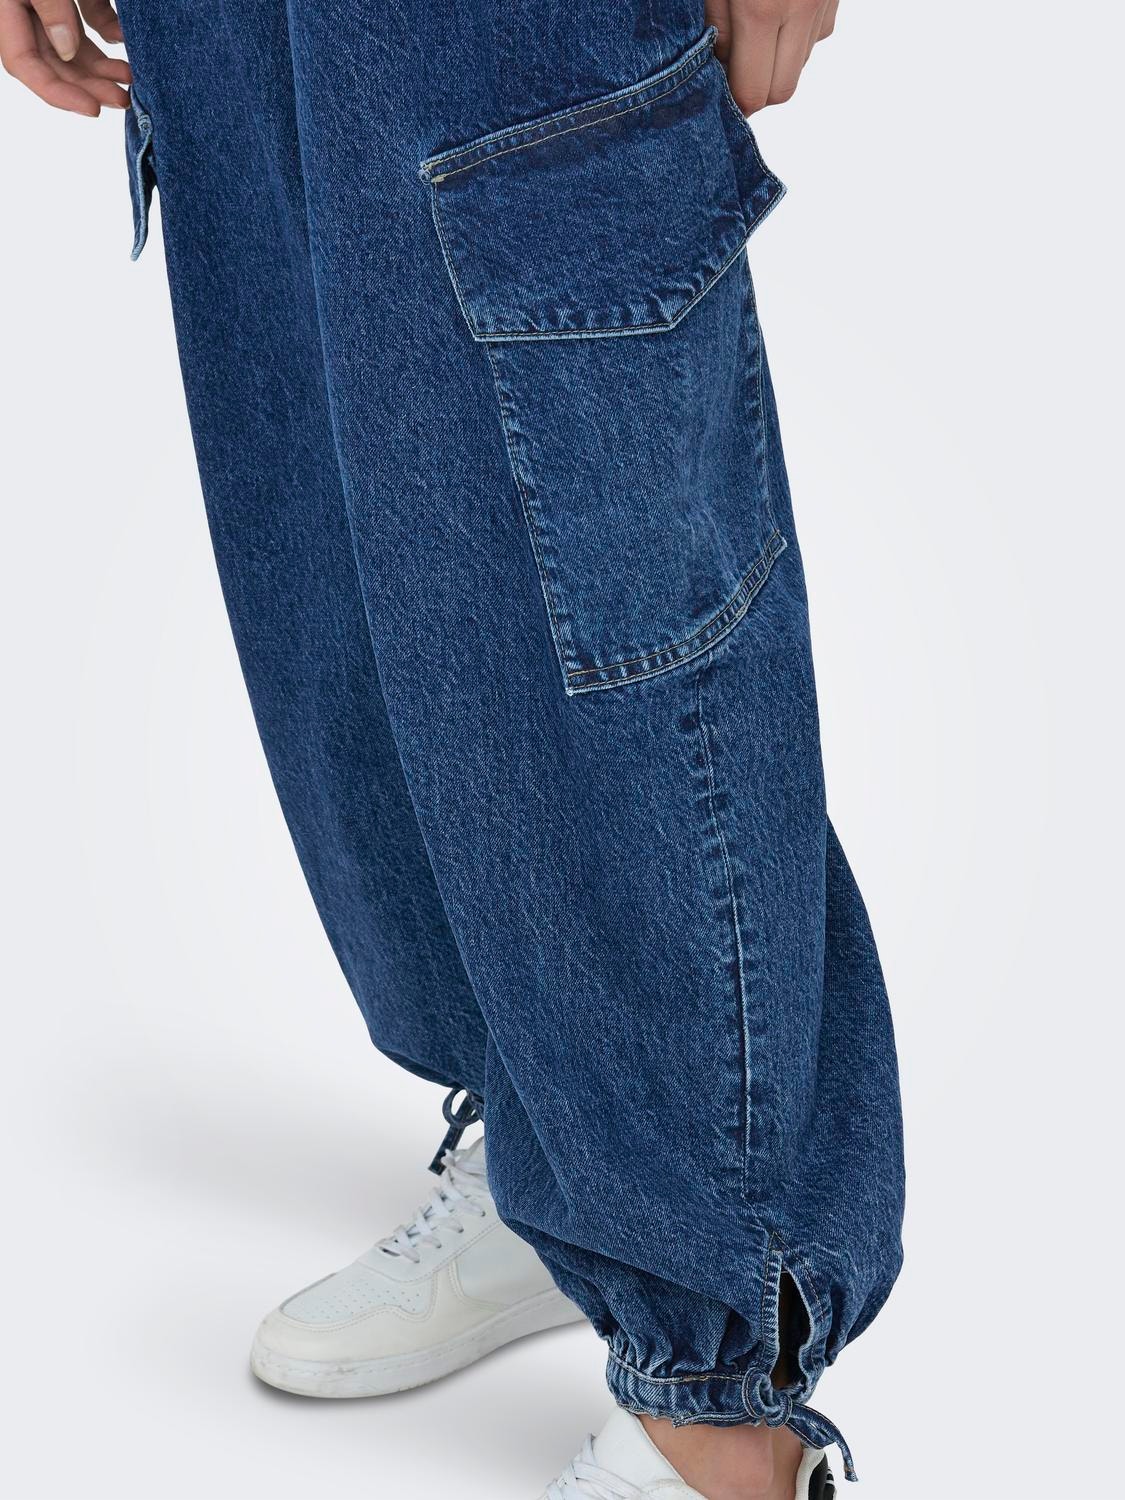 ONLY Jogger Fit High waist Elasticated hems Jeans -Medium Blue Denim - 15306235